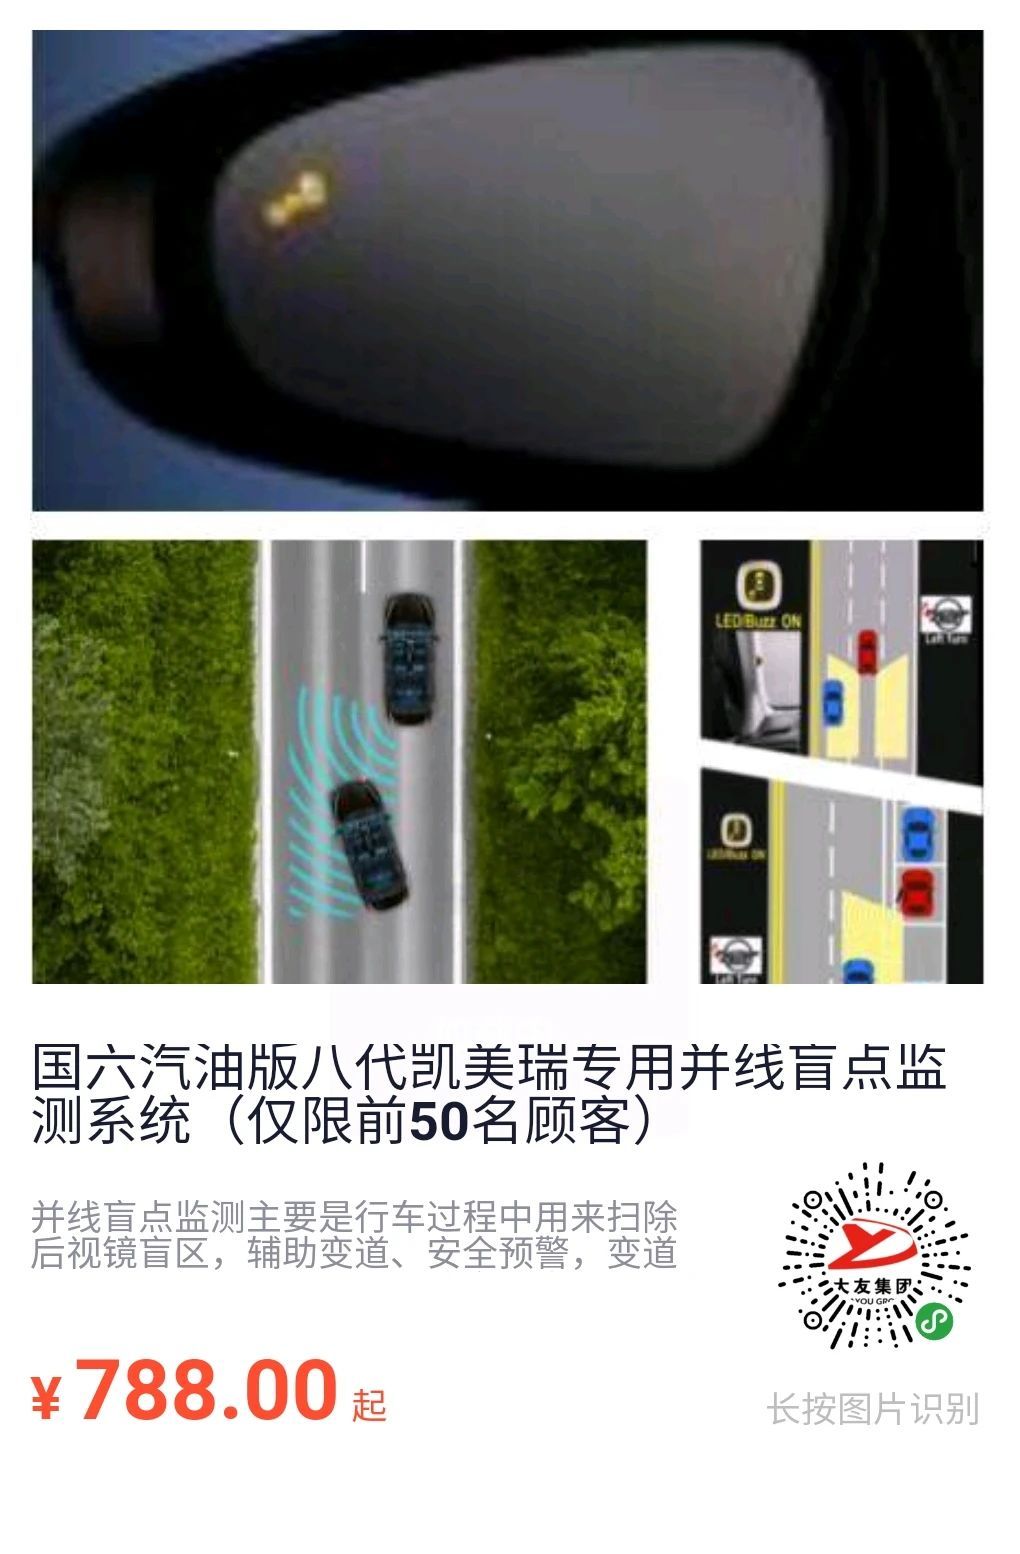 盲点检测系统 全景影像系统 辅助警示系统......大友丰田热卖汽车用品限量特供